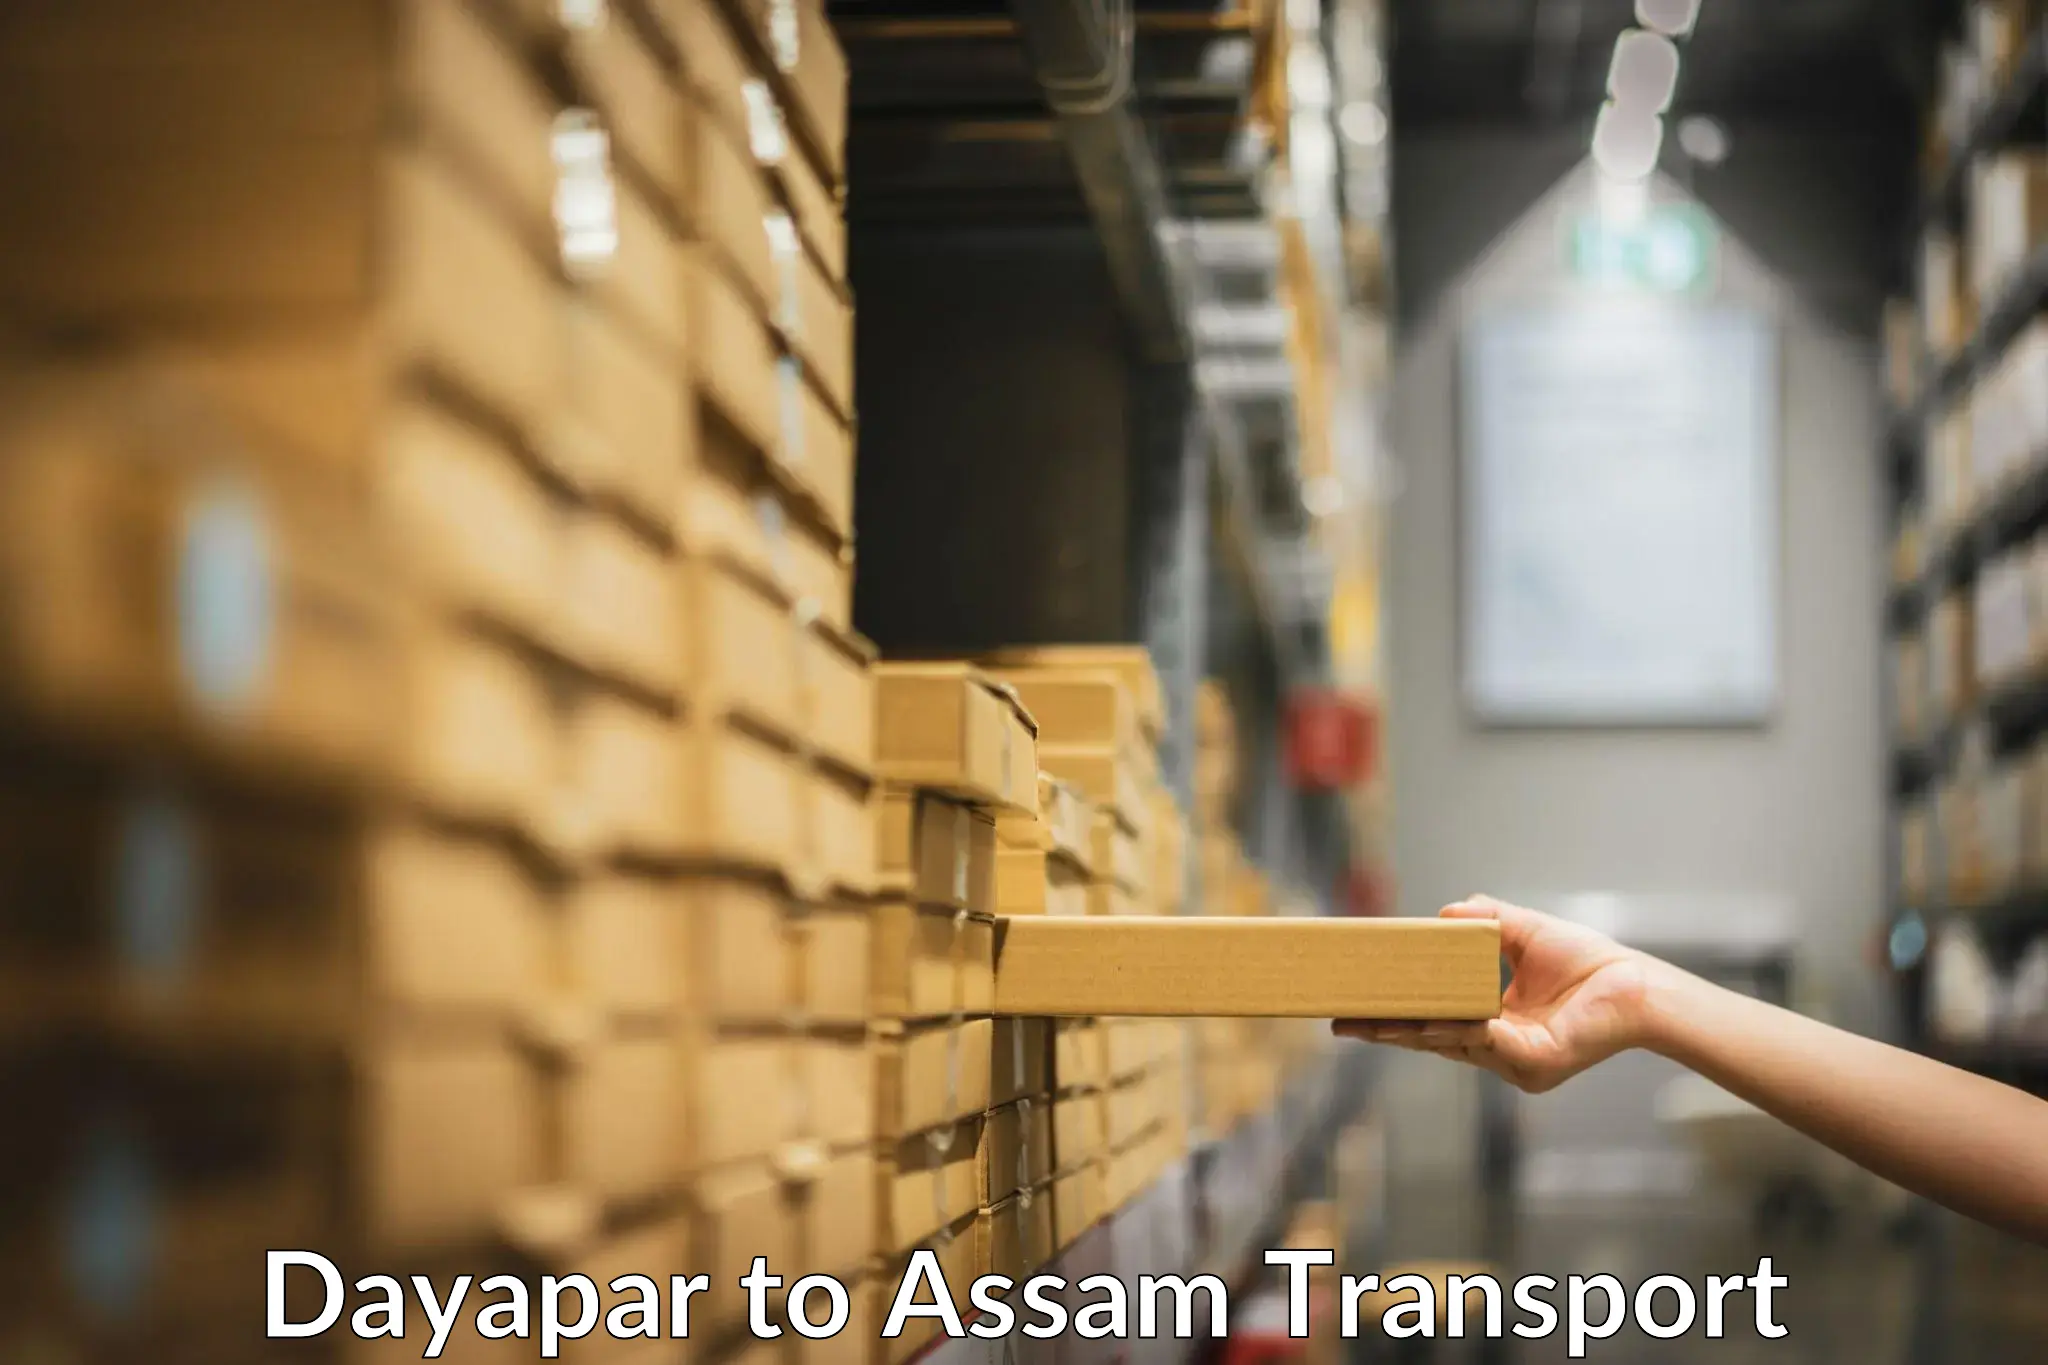 Transport shared services Dayapar to Assam